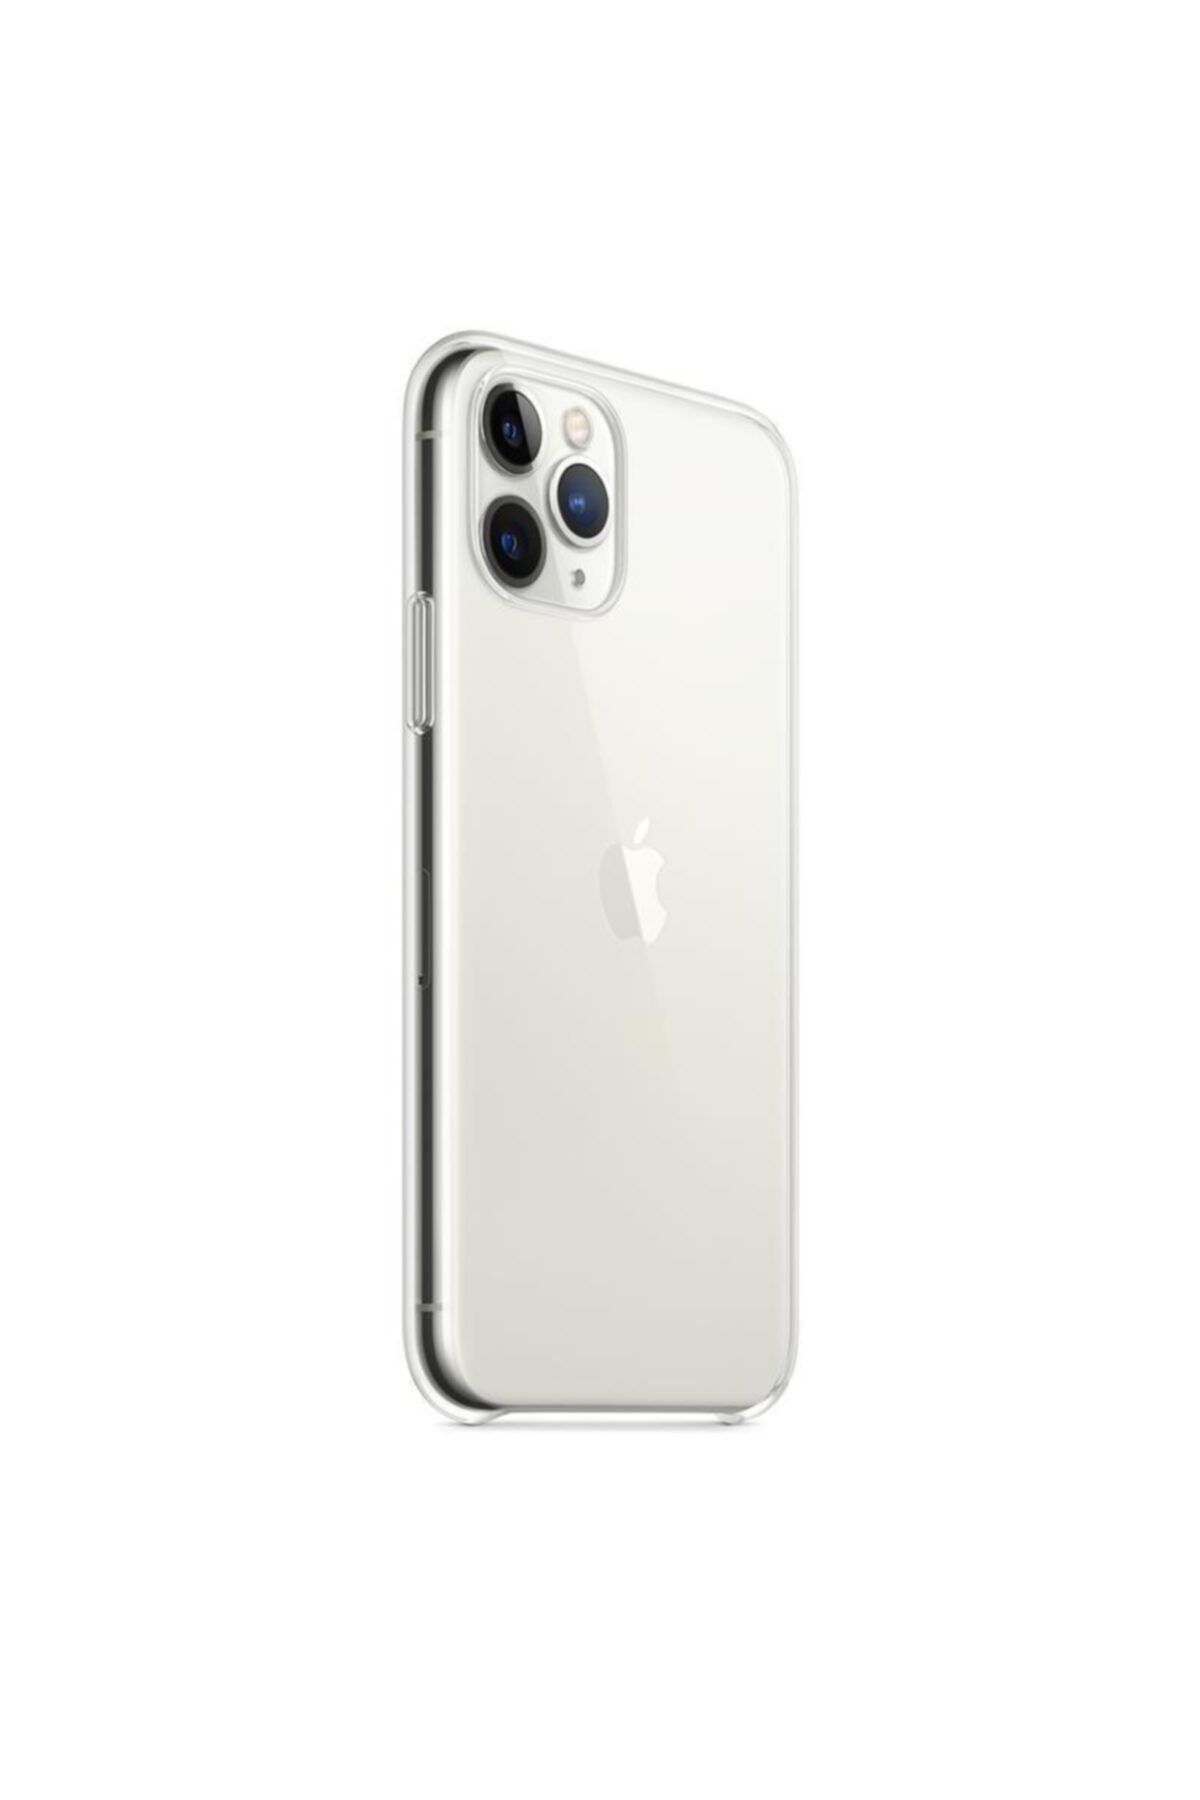 Apple Iphone 11 Pro Şeffaf Kılıf - Mwyk2zm/a ( Türkiye Garantili)